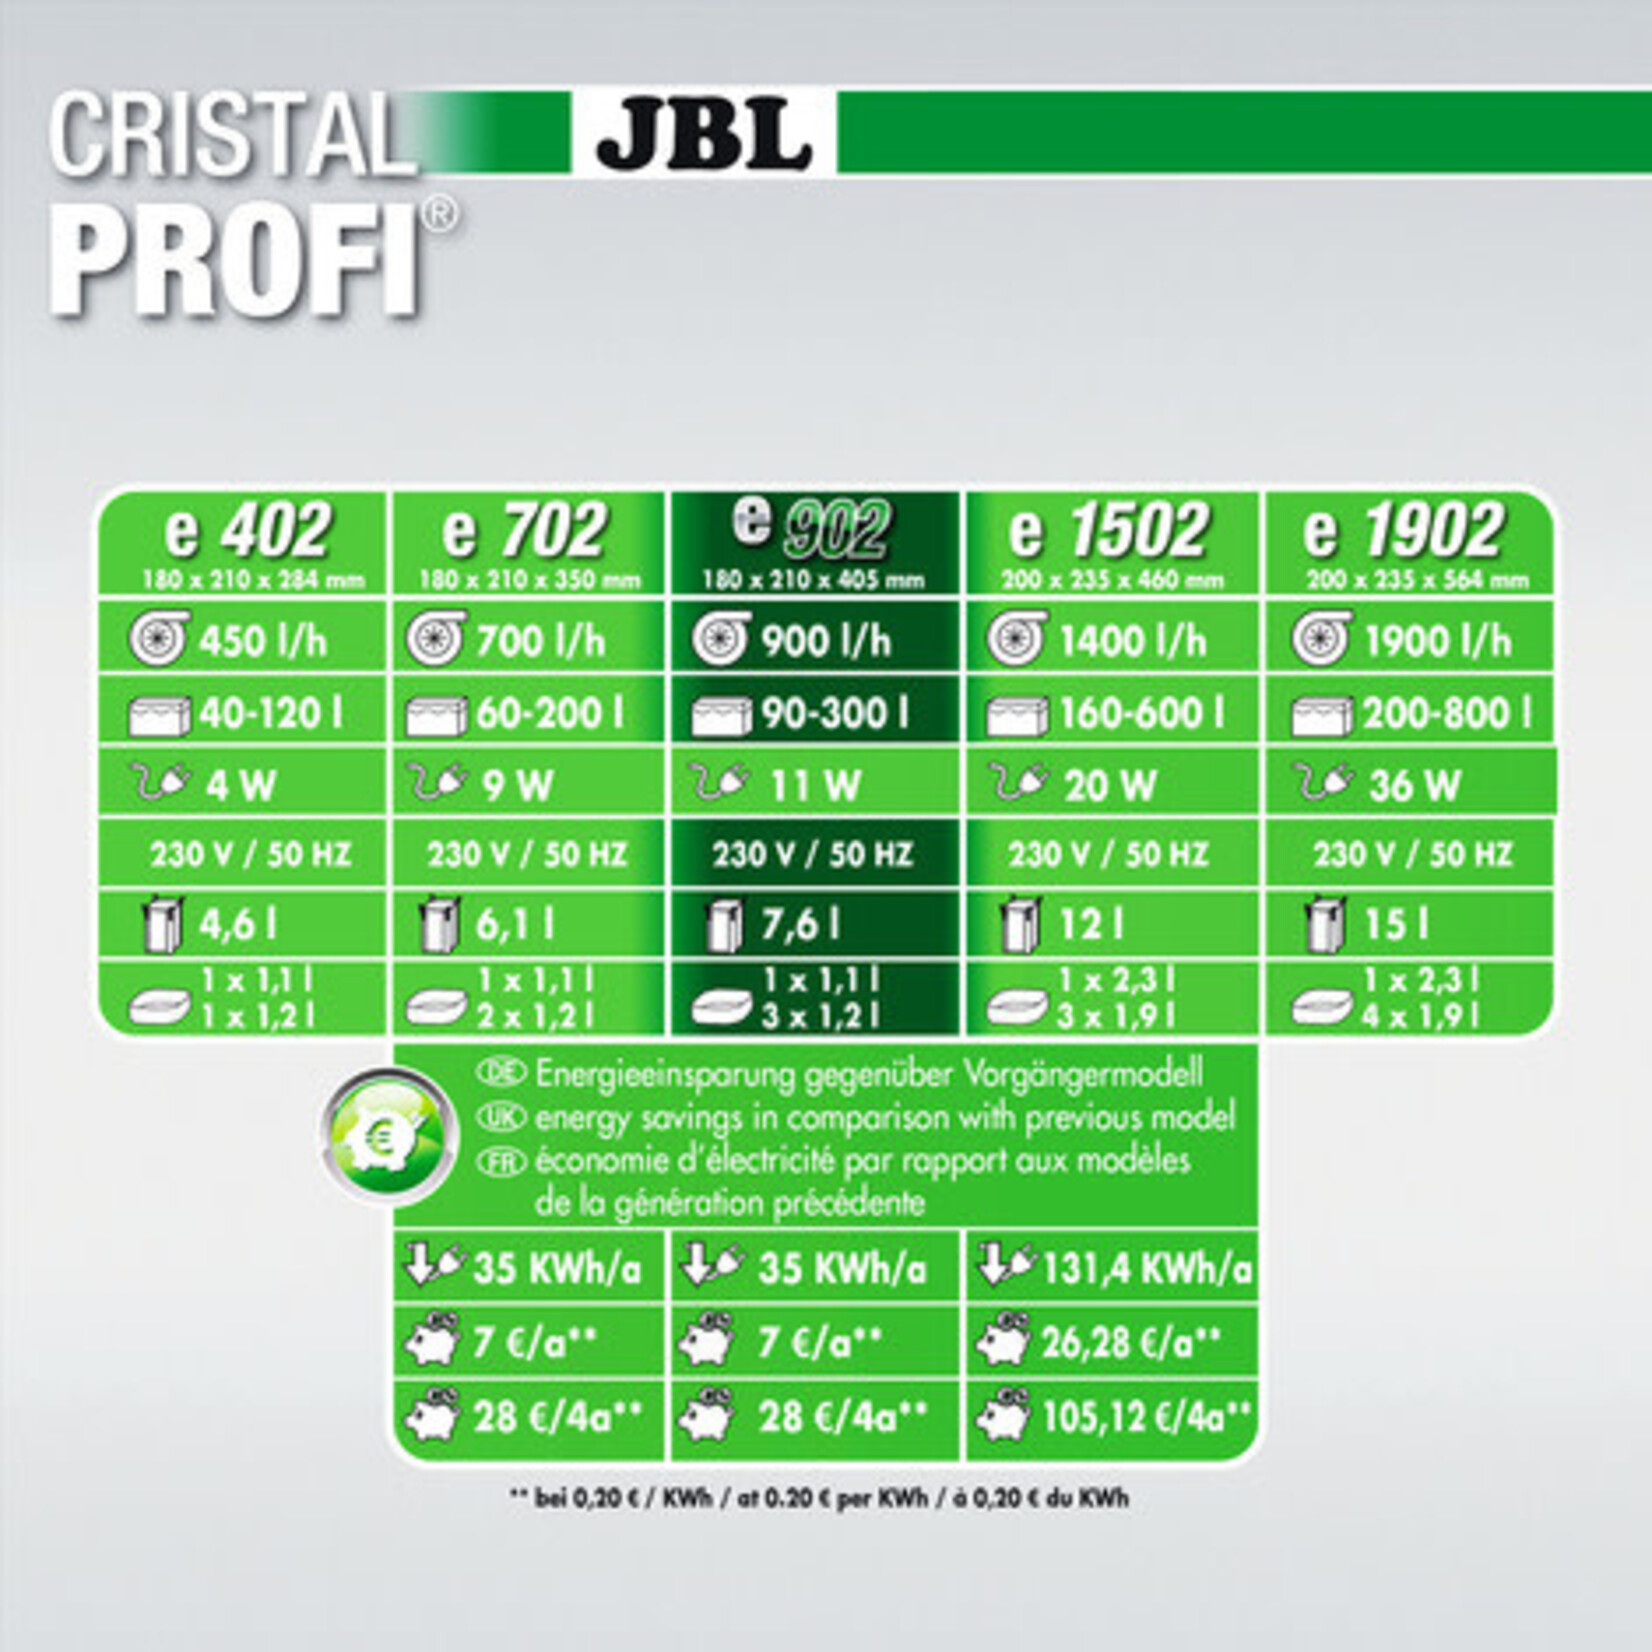 JBL JBL CristalProfi e902 greenline